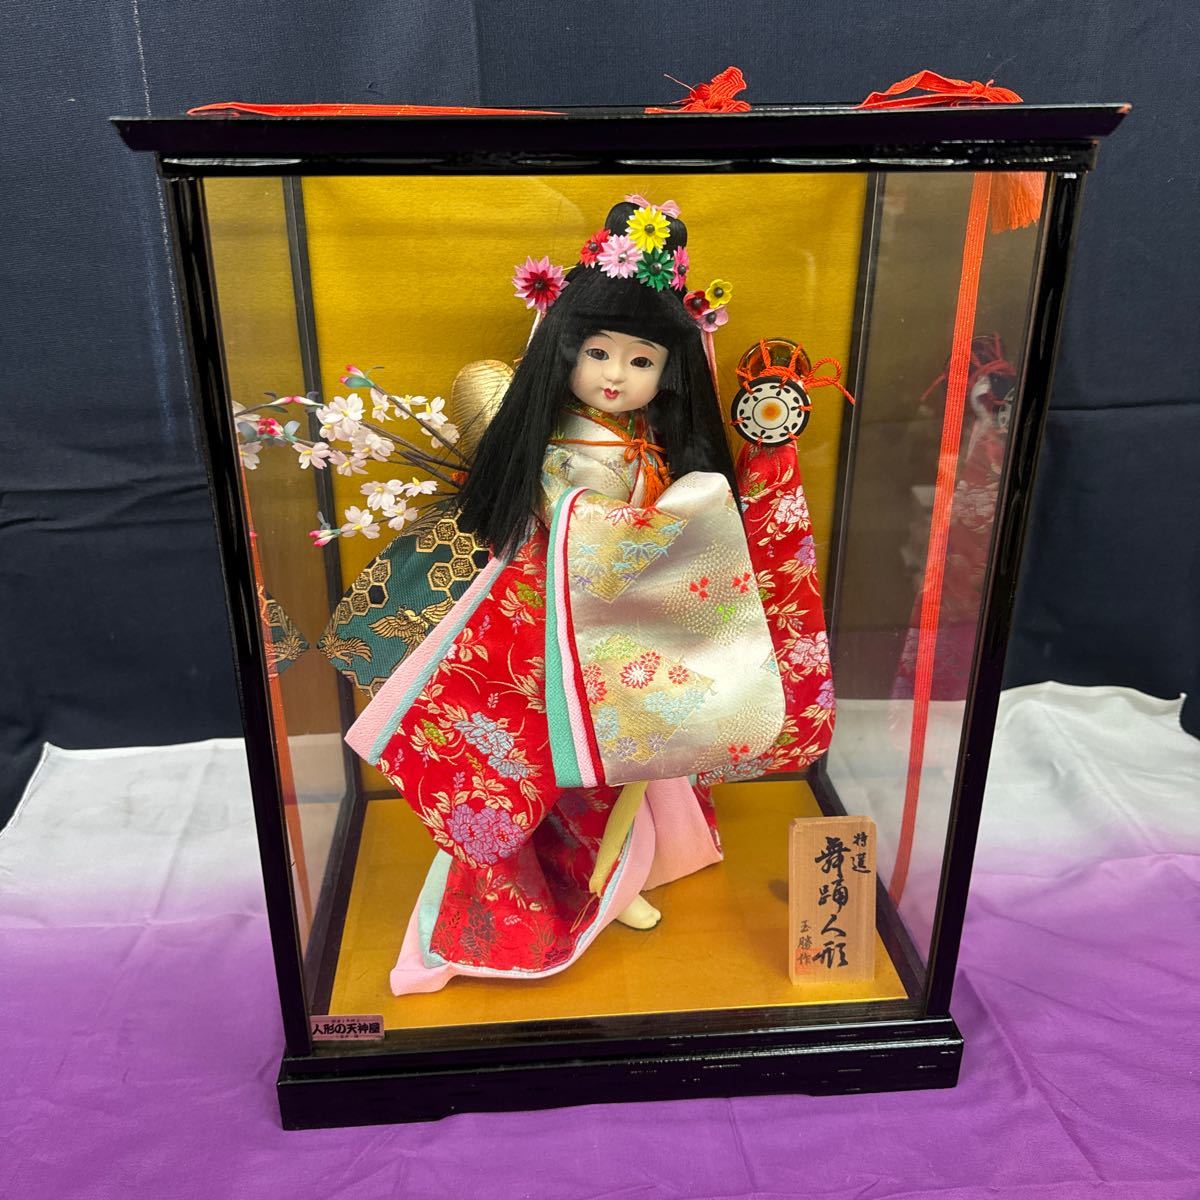 ◆中古 日本人形 舞踊人形 玉勝作 鼓 着物 コレクション ガラスケース付 置物 飾り 和風 インテリア 昭和レトロ 145-90_画像1